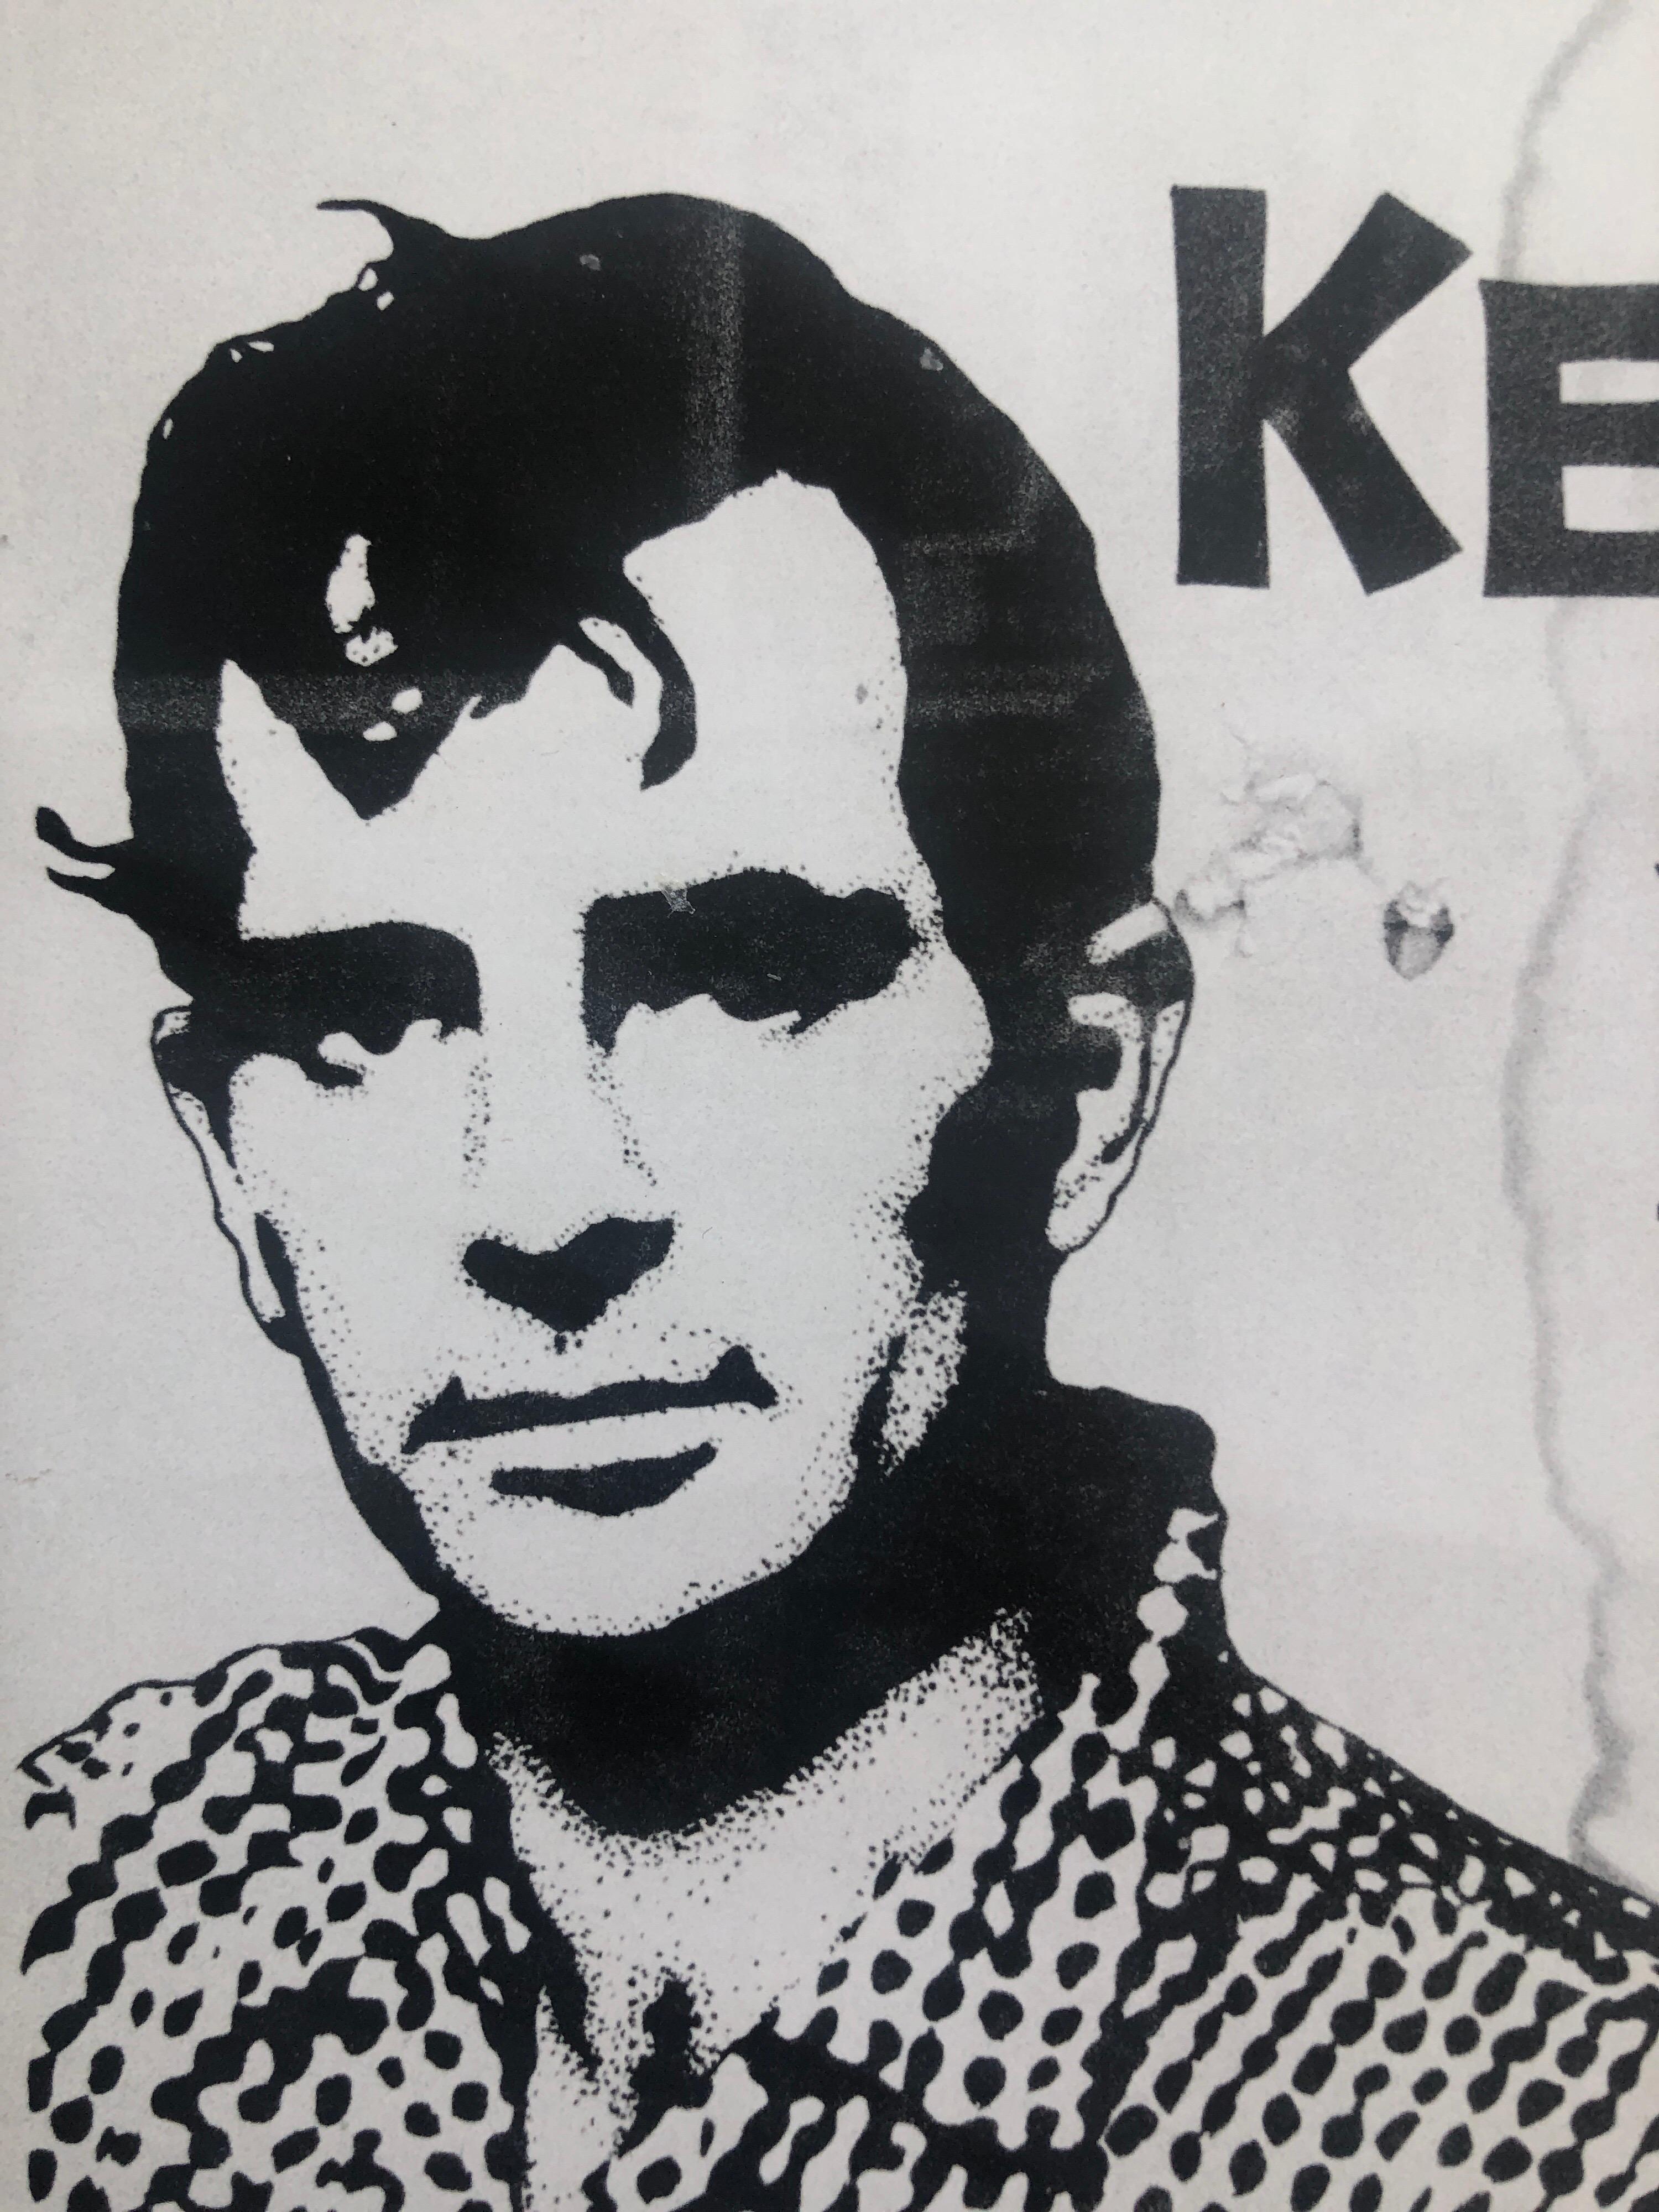 signiert in Tinte und mit Fotografenstempel verso und handschriftlichem Titel.
Jack Kerouac (er nannte sich Jean-Louis Lebris de Kérouac); 1922 - 1969 war ein amerikanischer Schriftsteller und Dichter französisch-kanadischer Abstammung.
Er gilt als